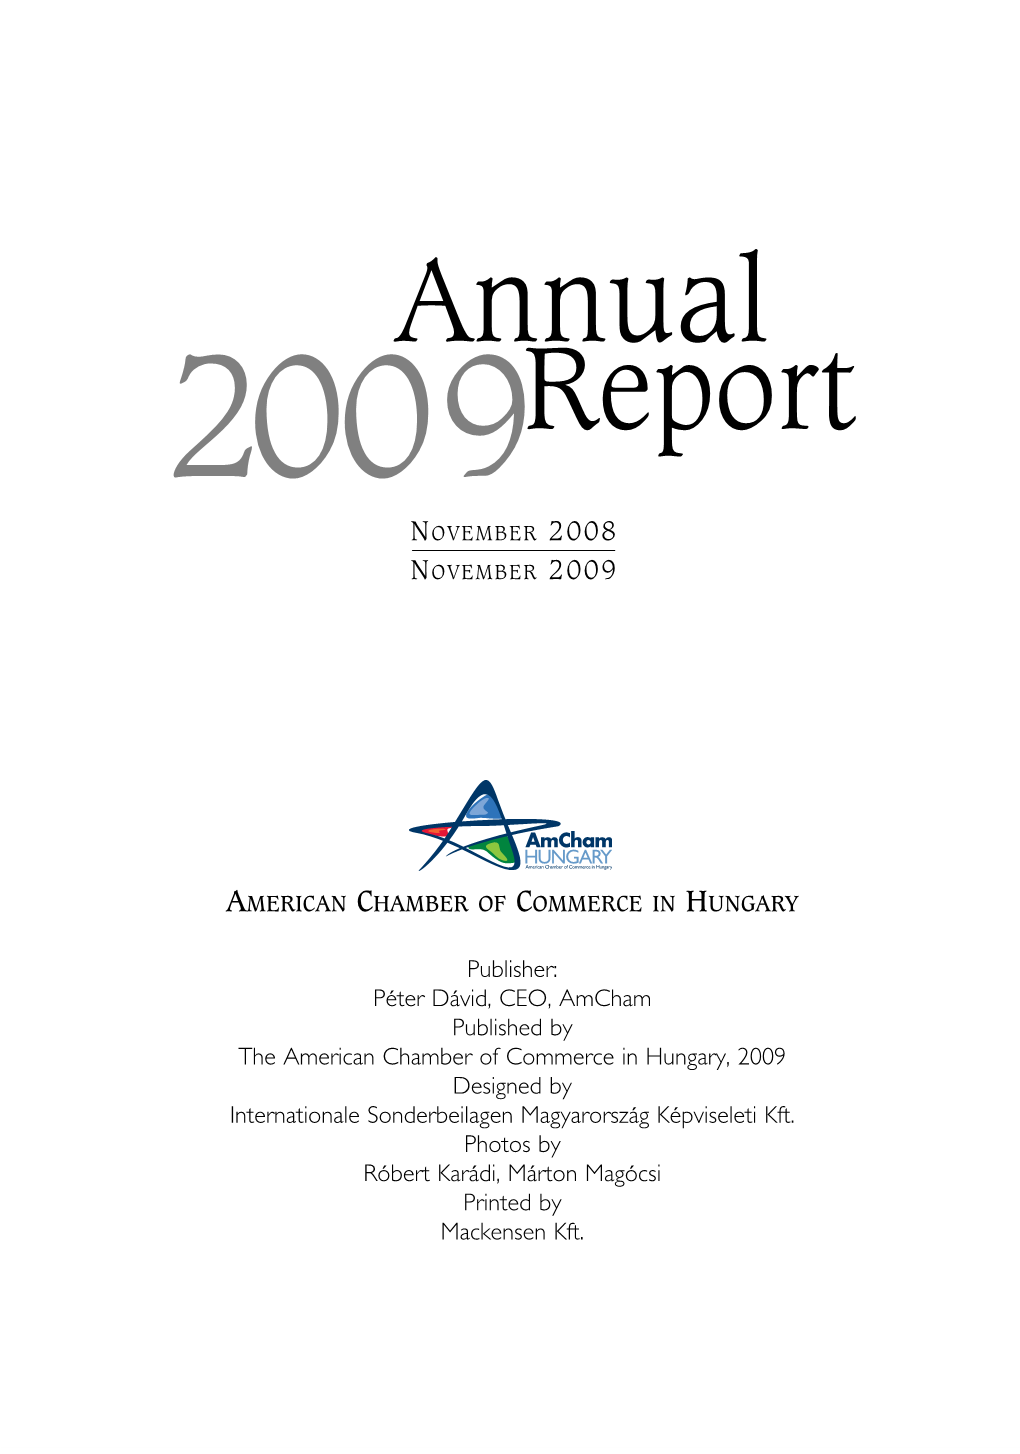 Annual Report of Amcham